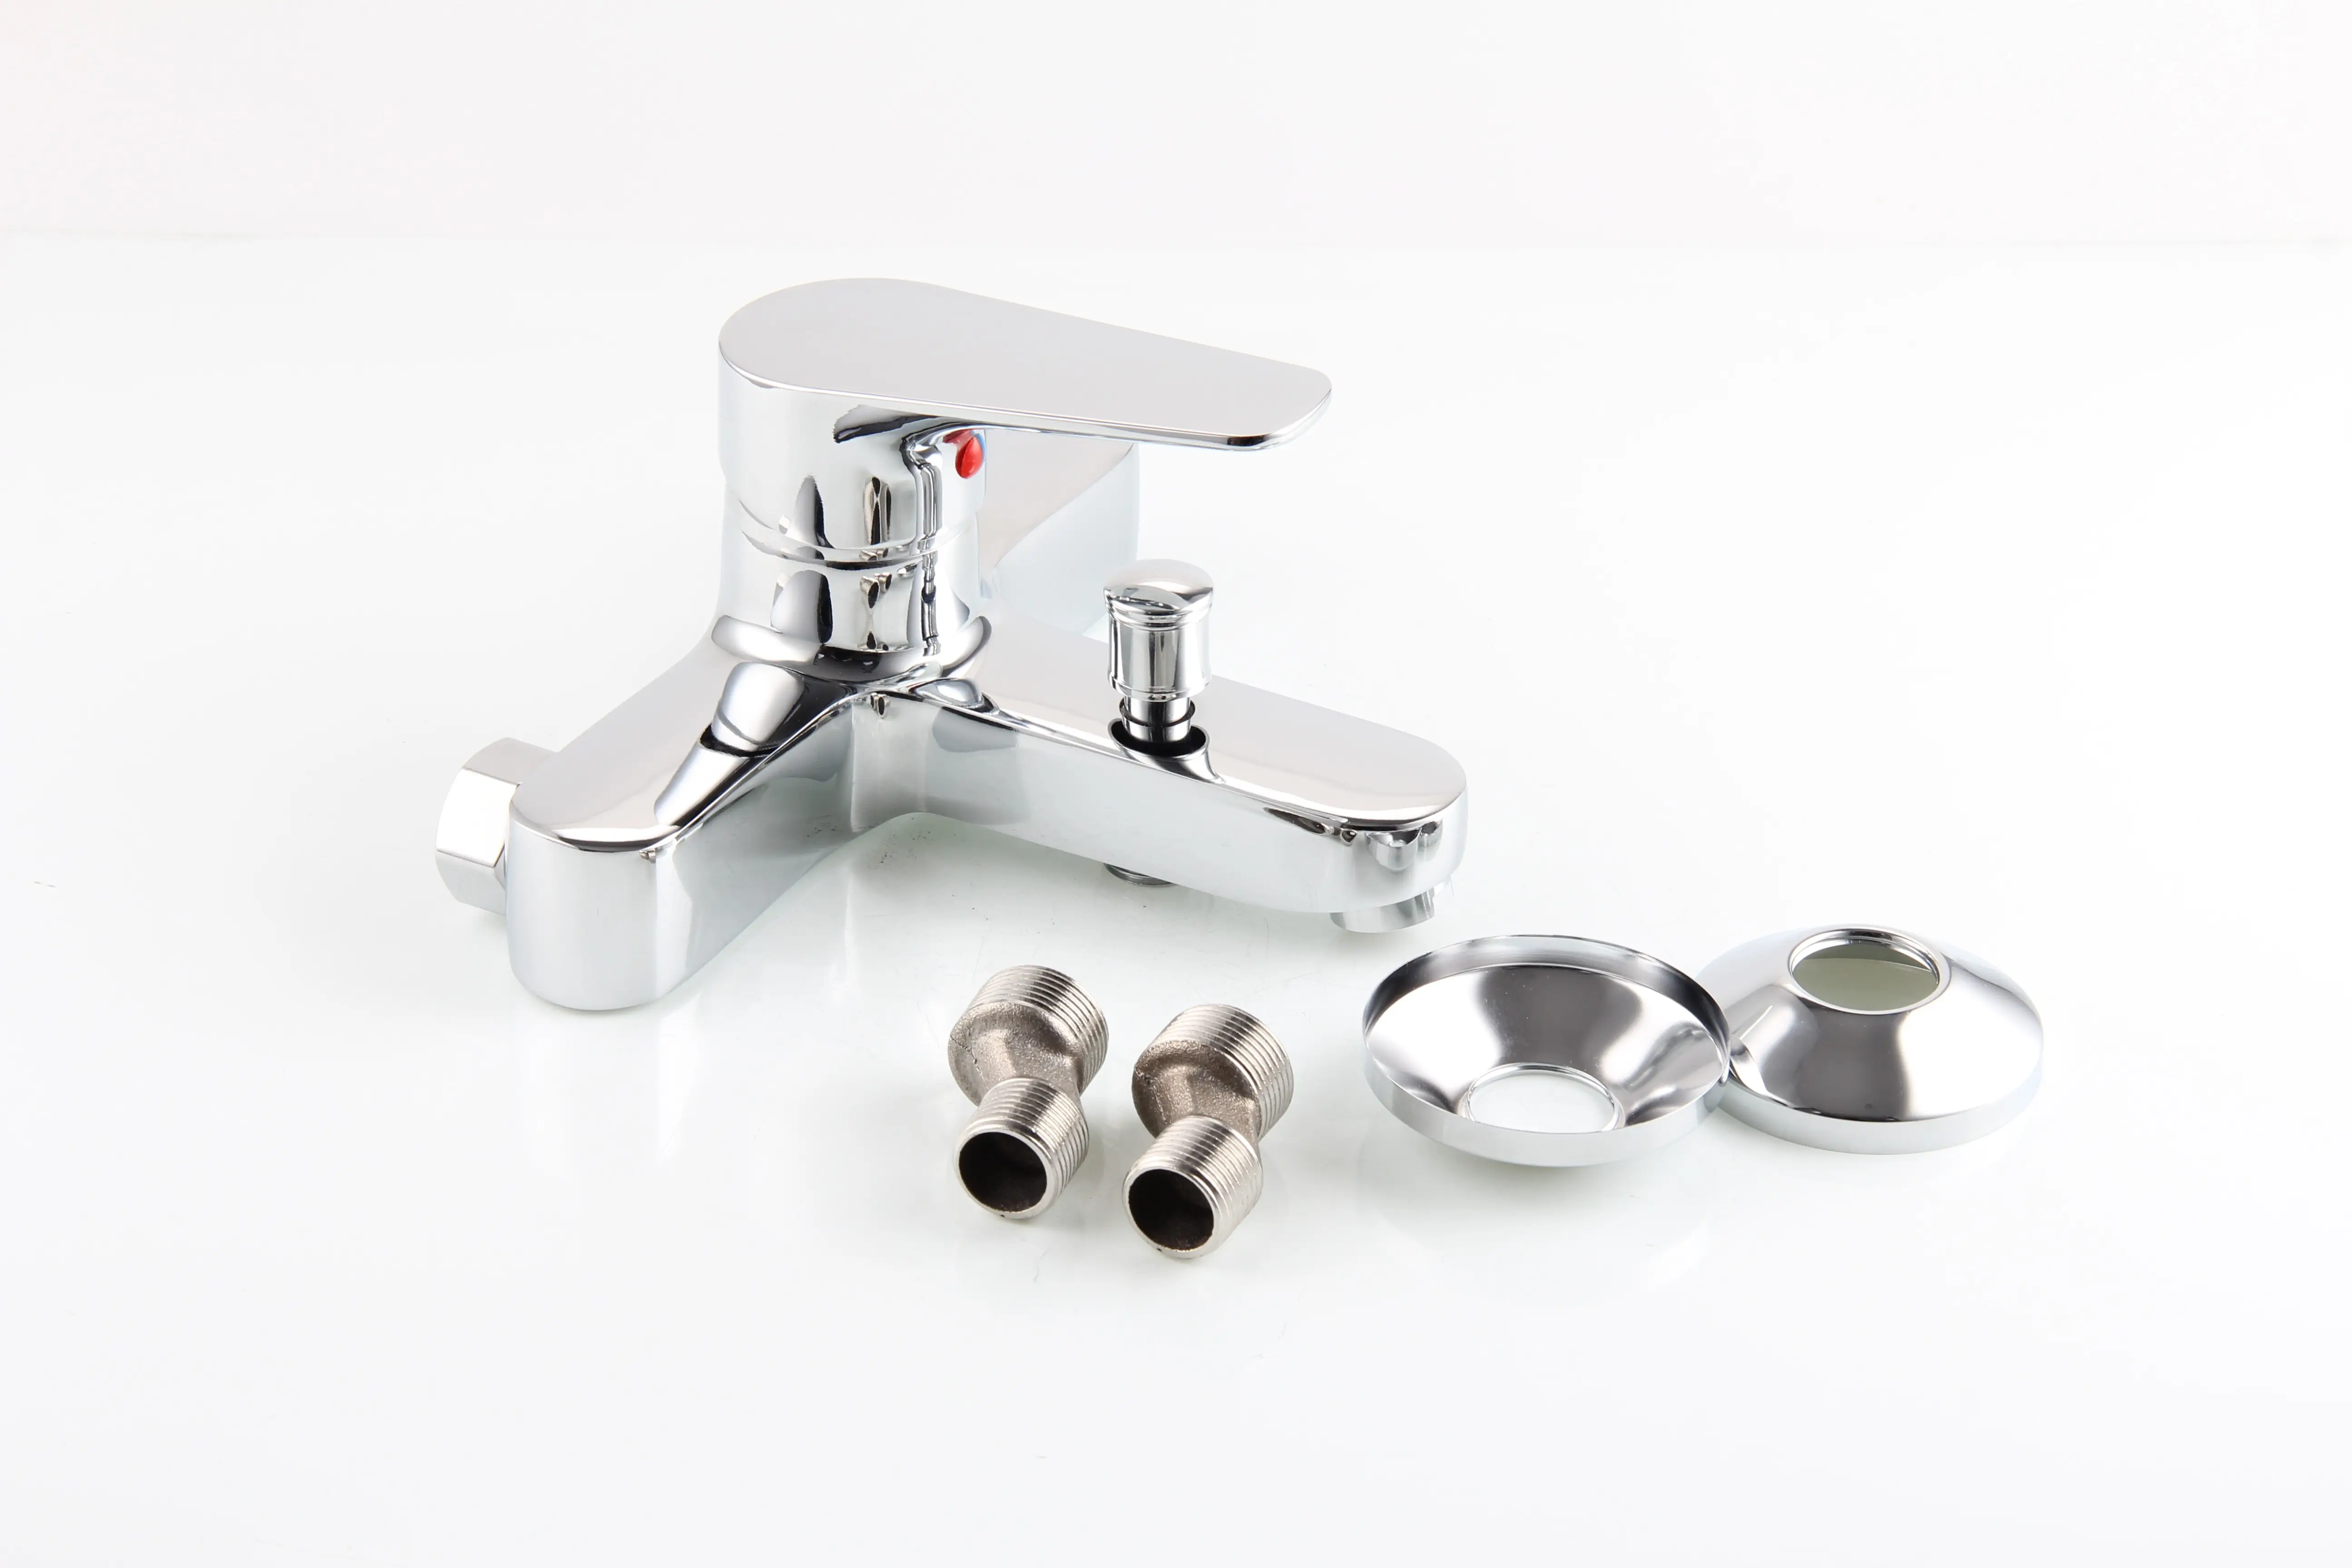 Innovative Modern Design Faucet Bathroom Zinc basin faucet bath mixer waterfall sink faucet